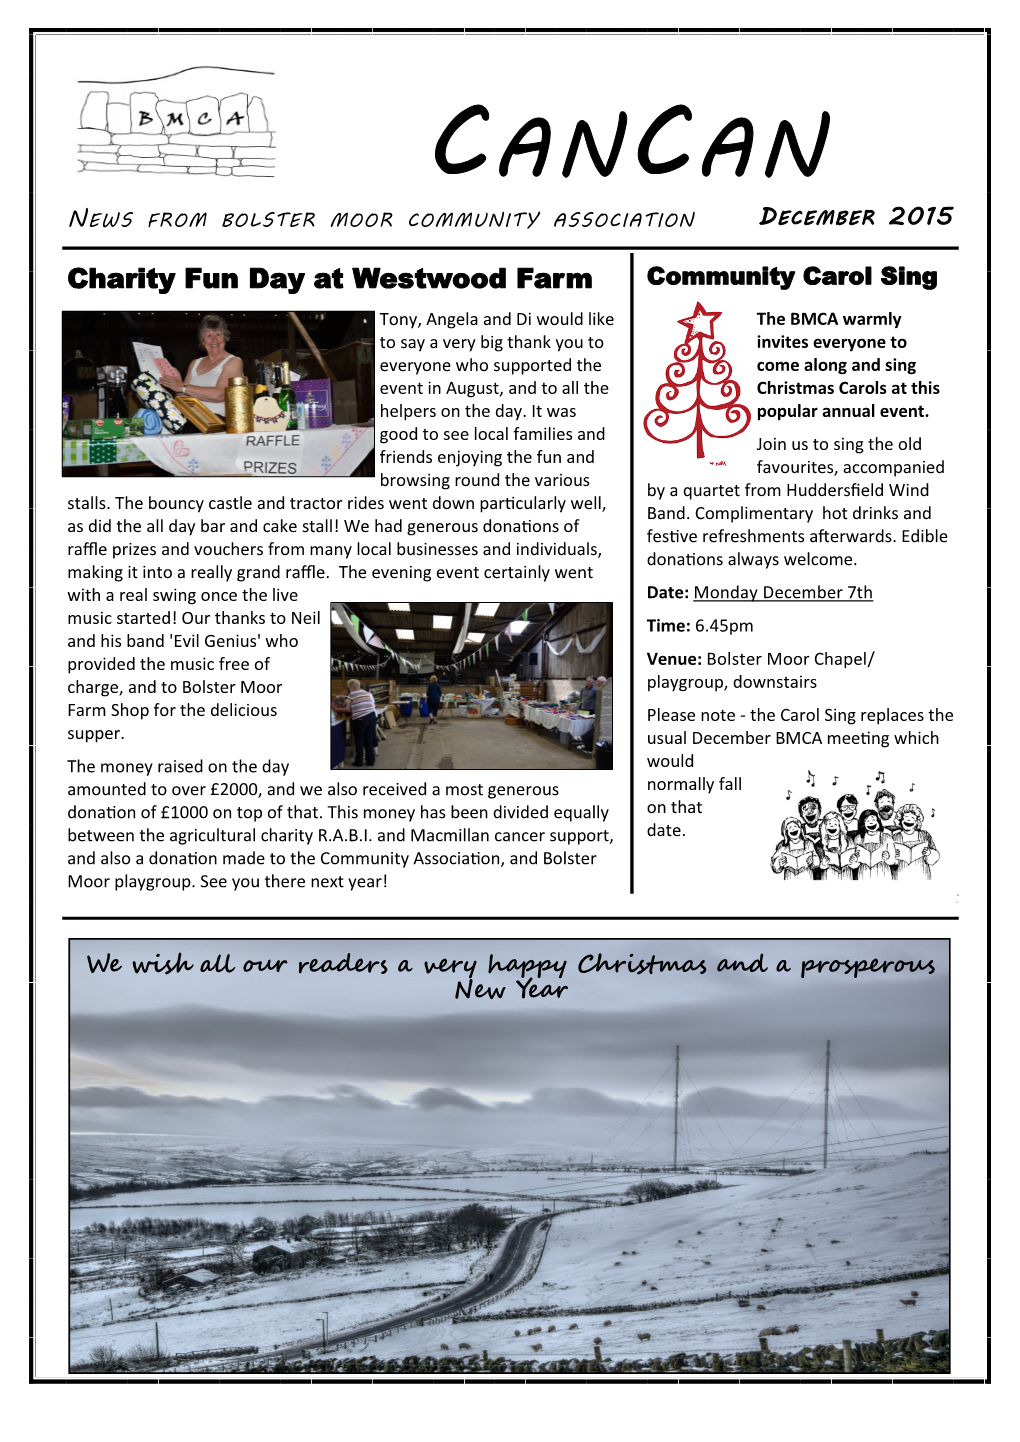 Cancan News from Bolster Moor Community Association December 2015